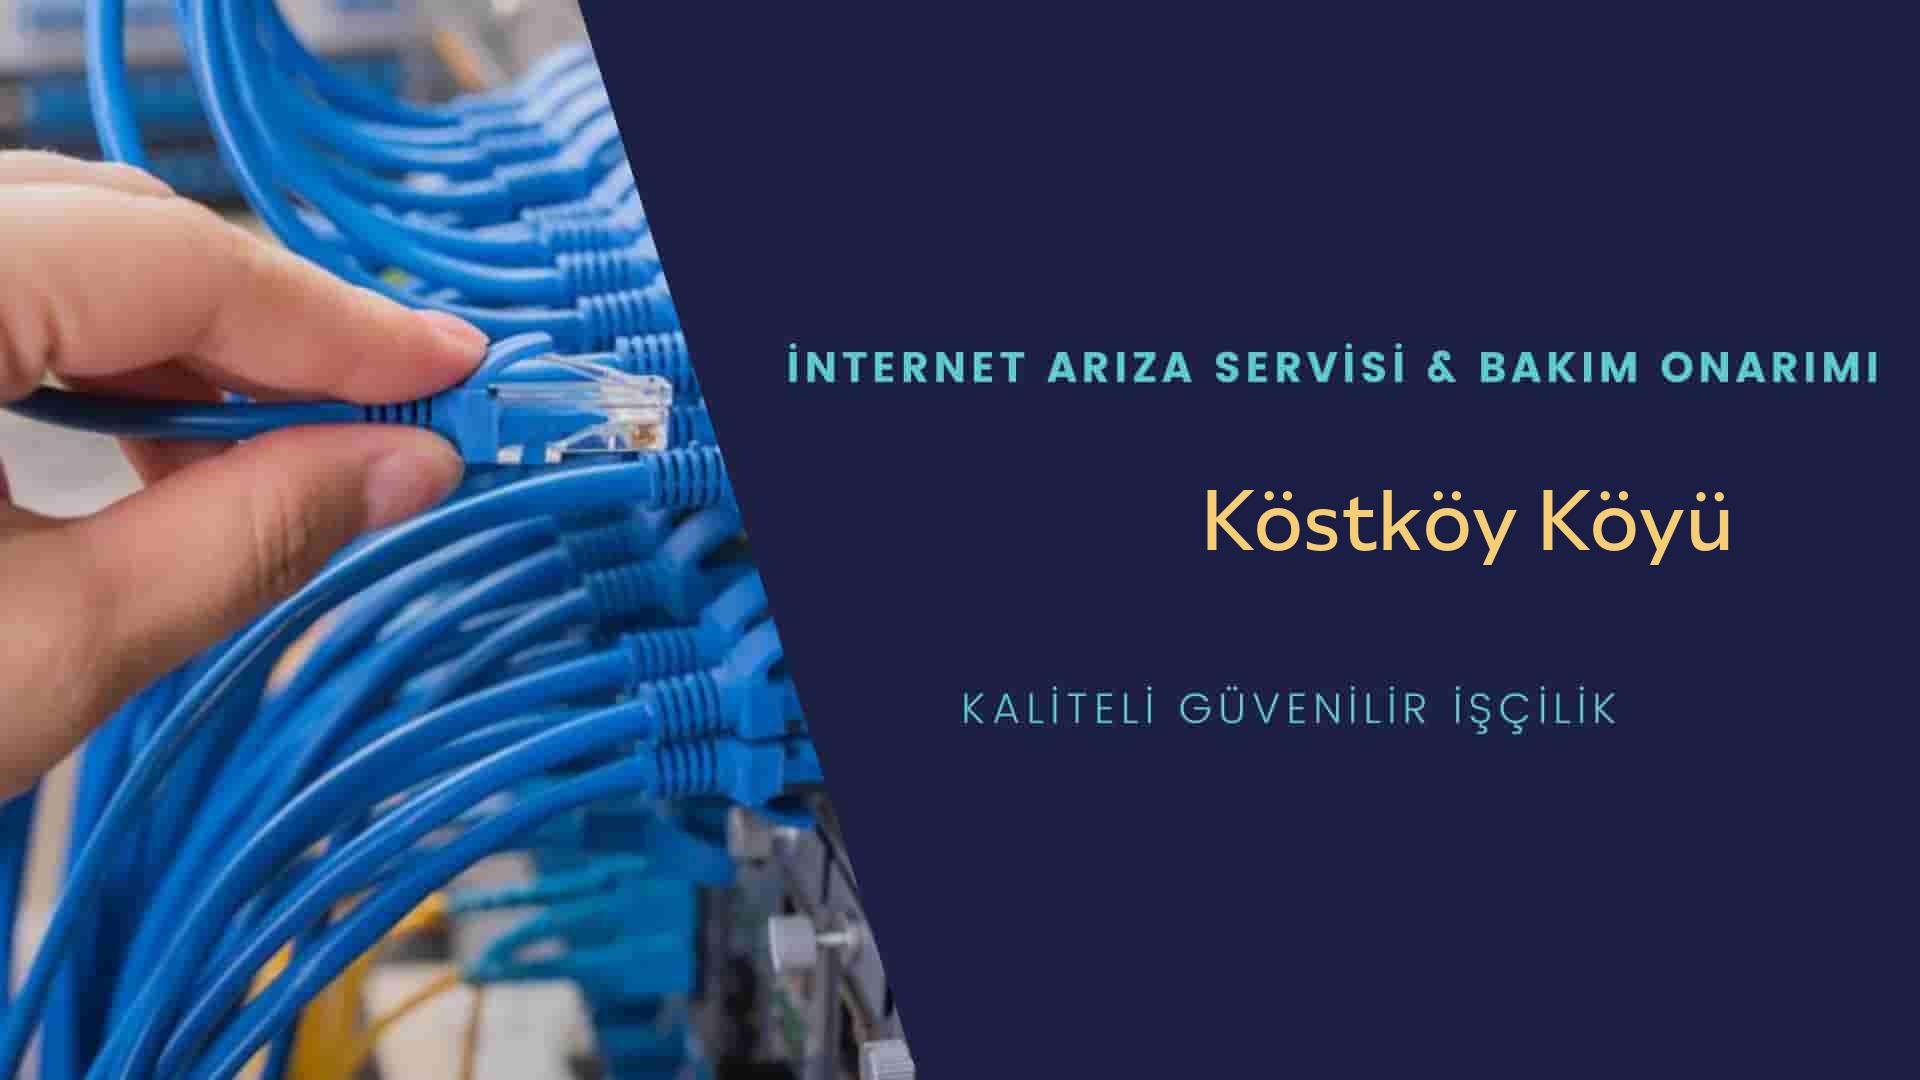 Köstköy Köyü internet kablosu çekimi yapan yerler veya elektrikçiler mi? arıyorsunuz doğru yerdesiniz o zaman sizlere 7/24 yardımcı olacak profesyonel ustalarımız bir telefon kadar yakındır size.